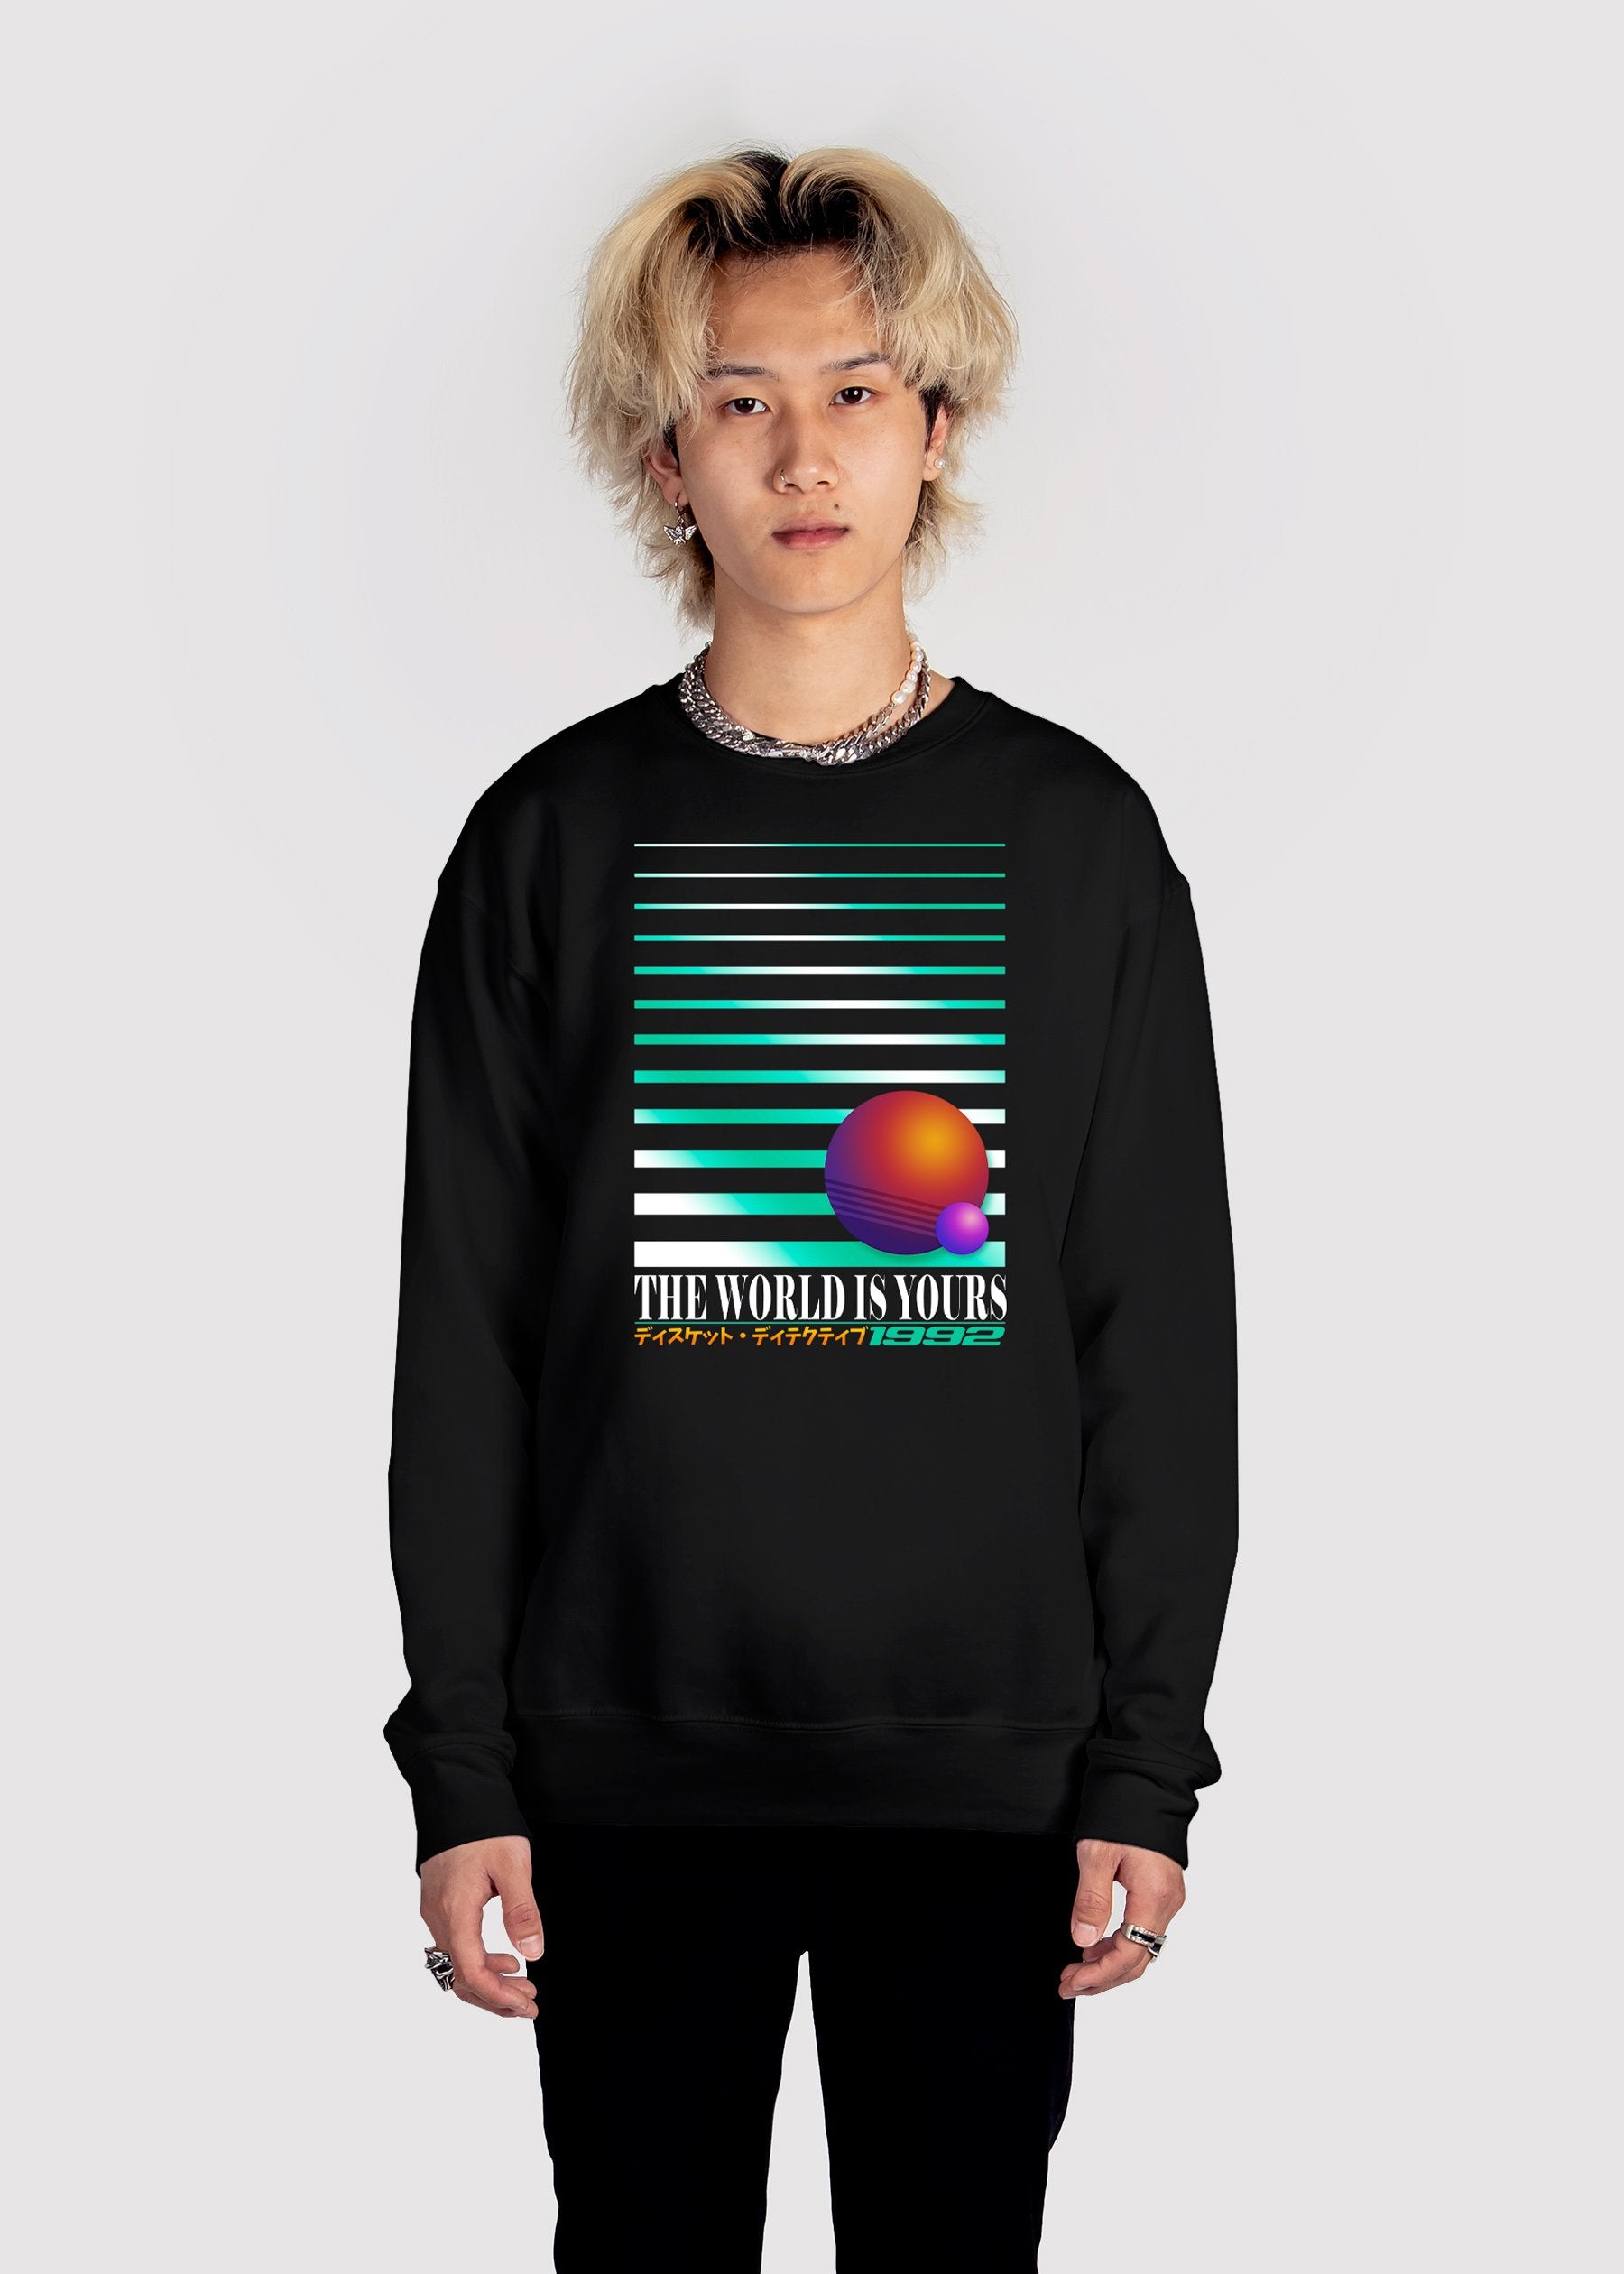 The World Is Yours Sweatshirt Graphic Sweatshirt Vapor95 Black S